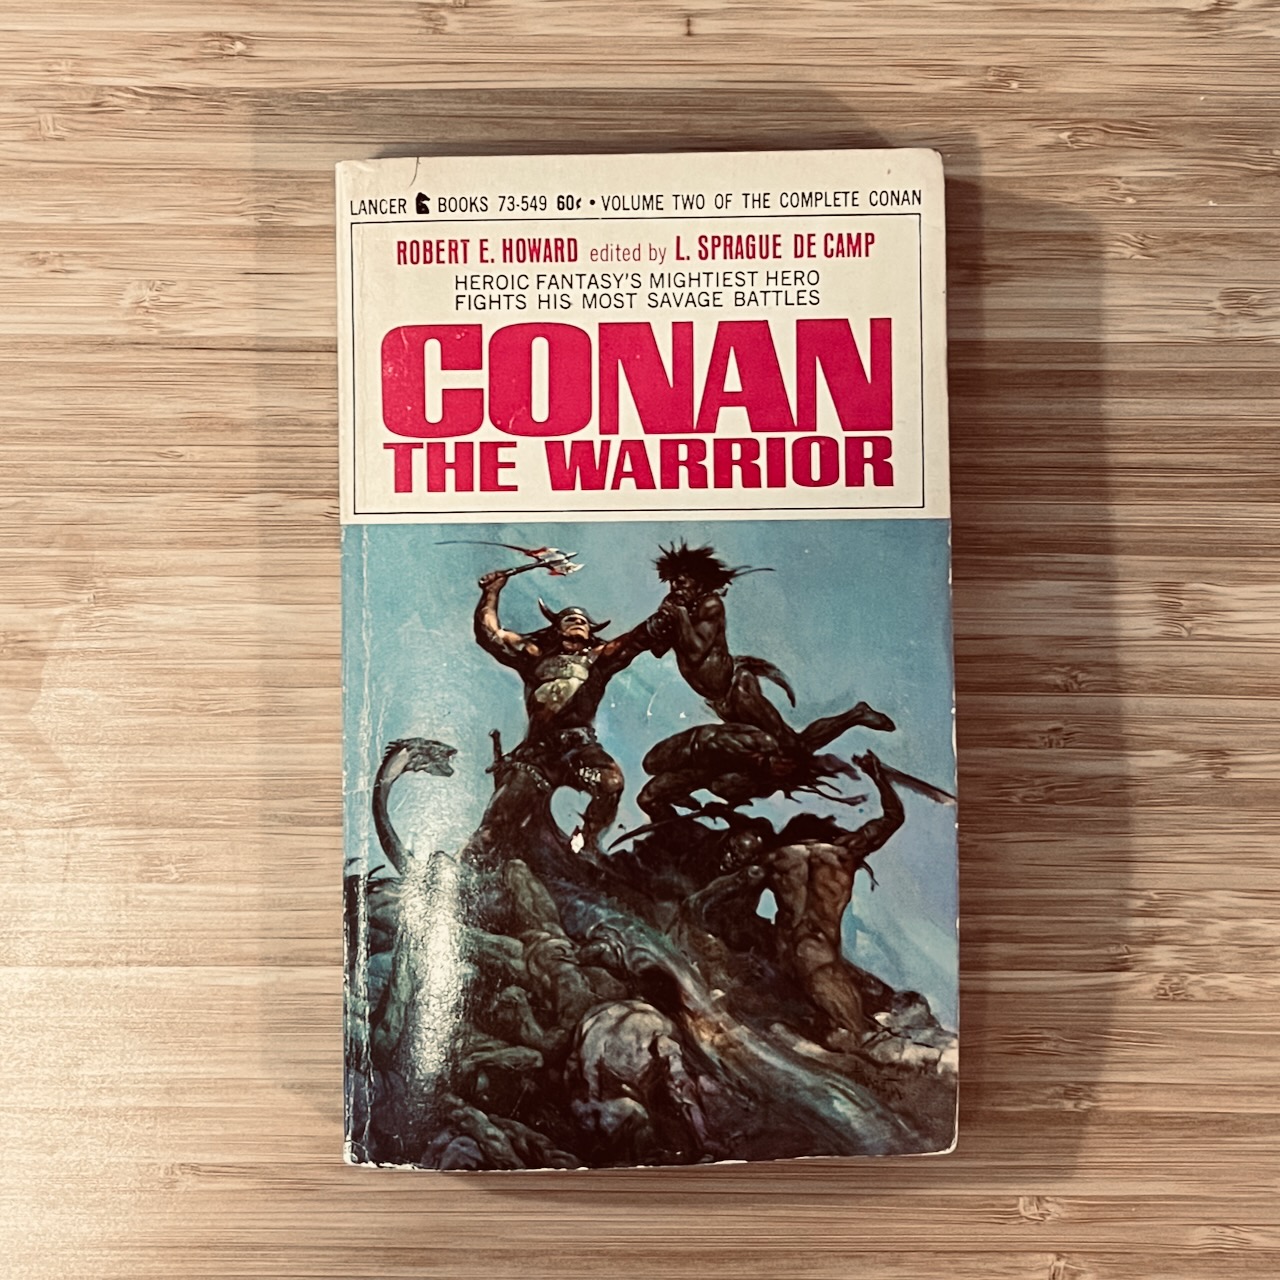 A 1968 copy of Conan the Warrior